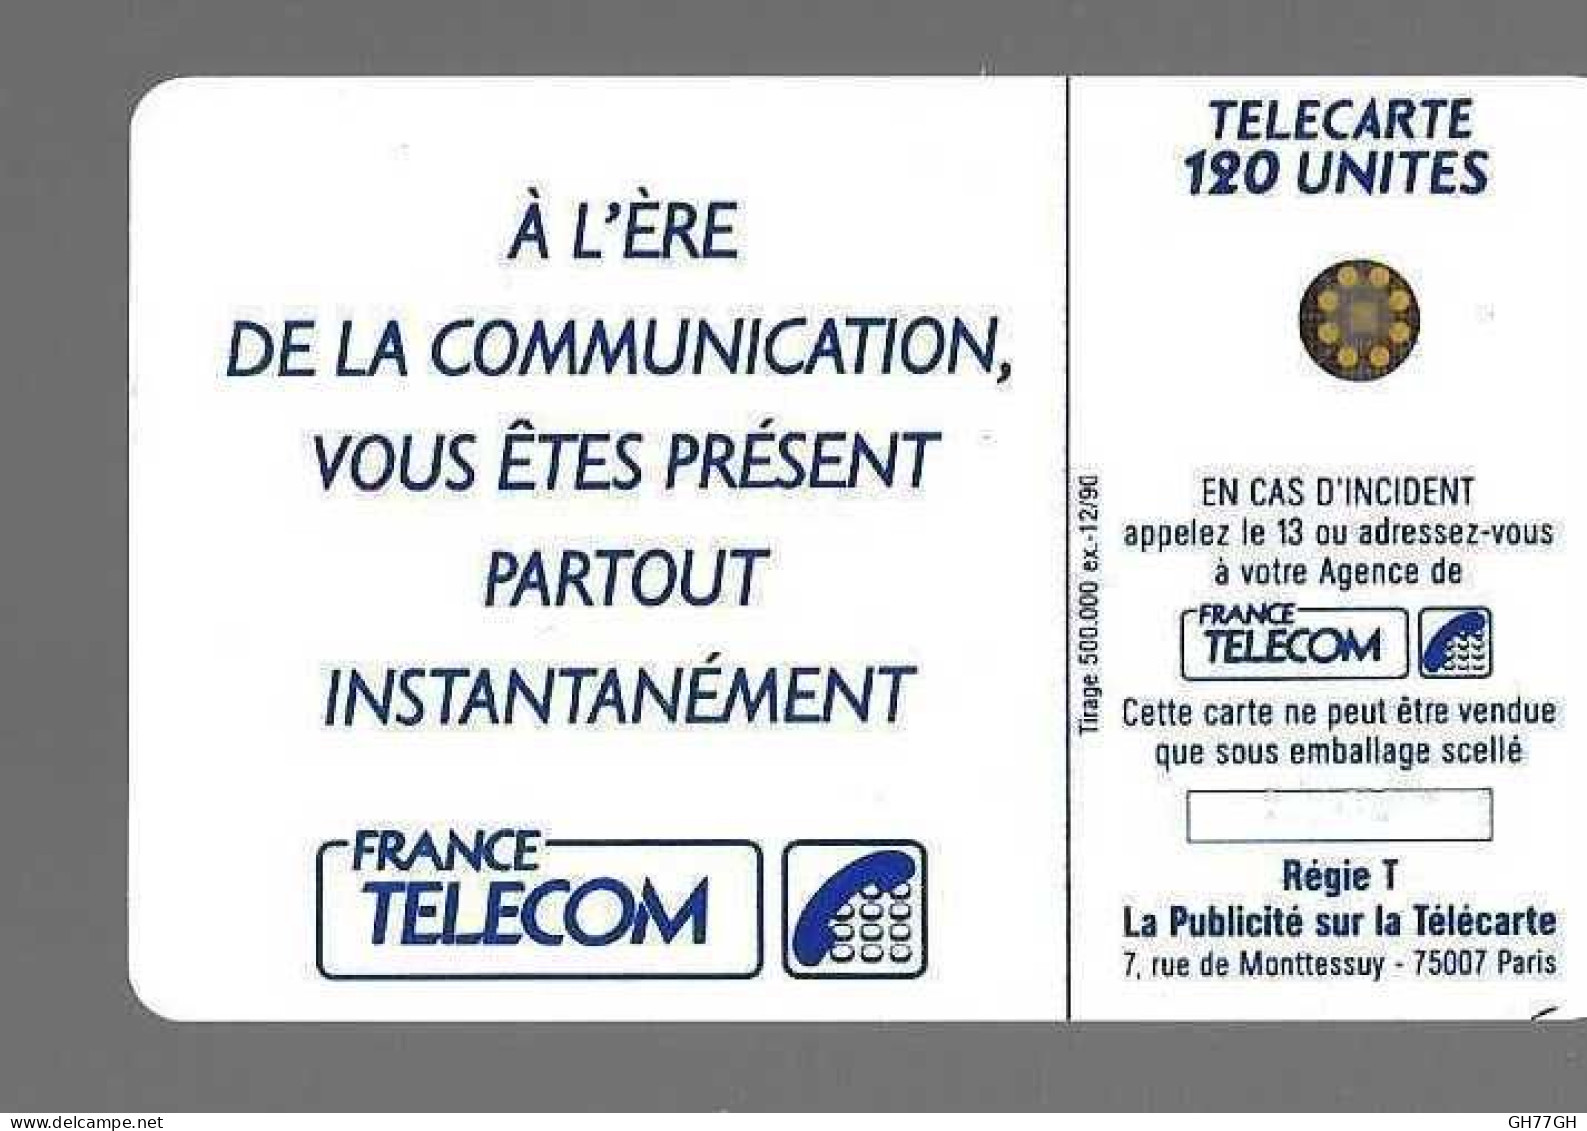 TELECARTE FRANCE TELECOM - 1990